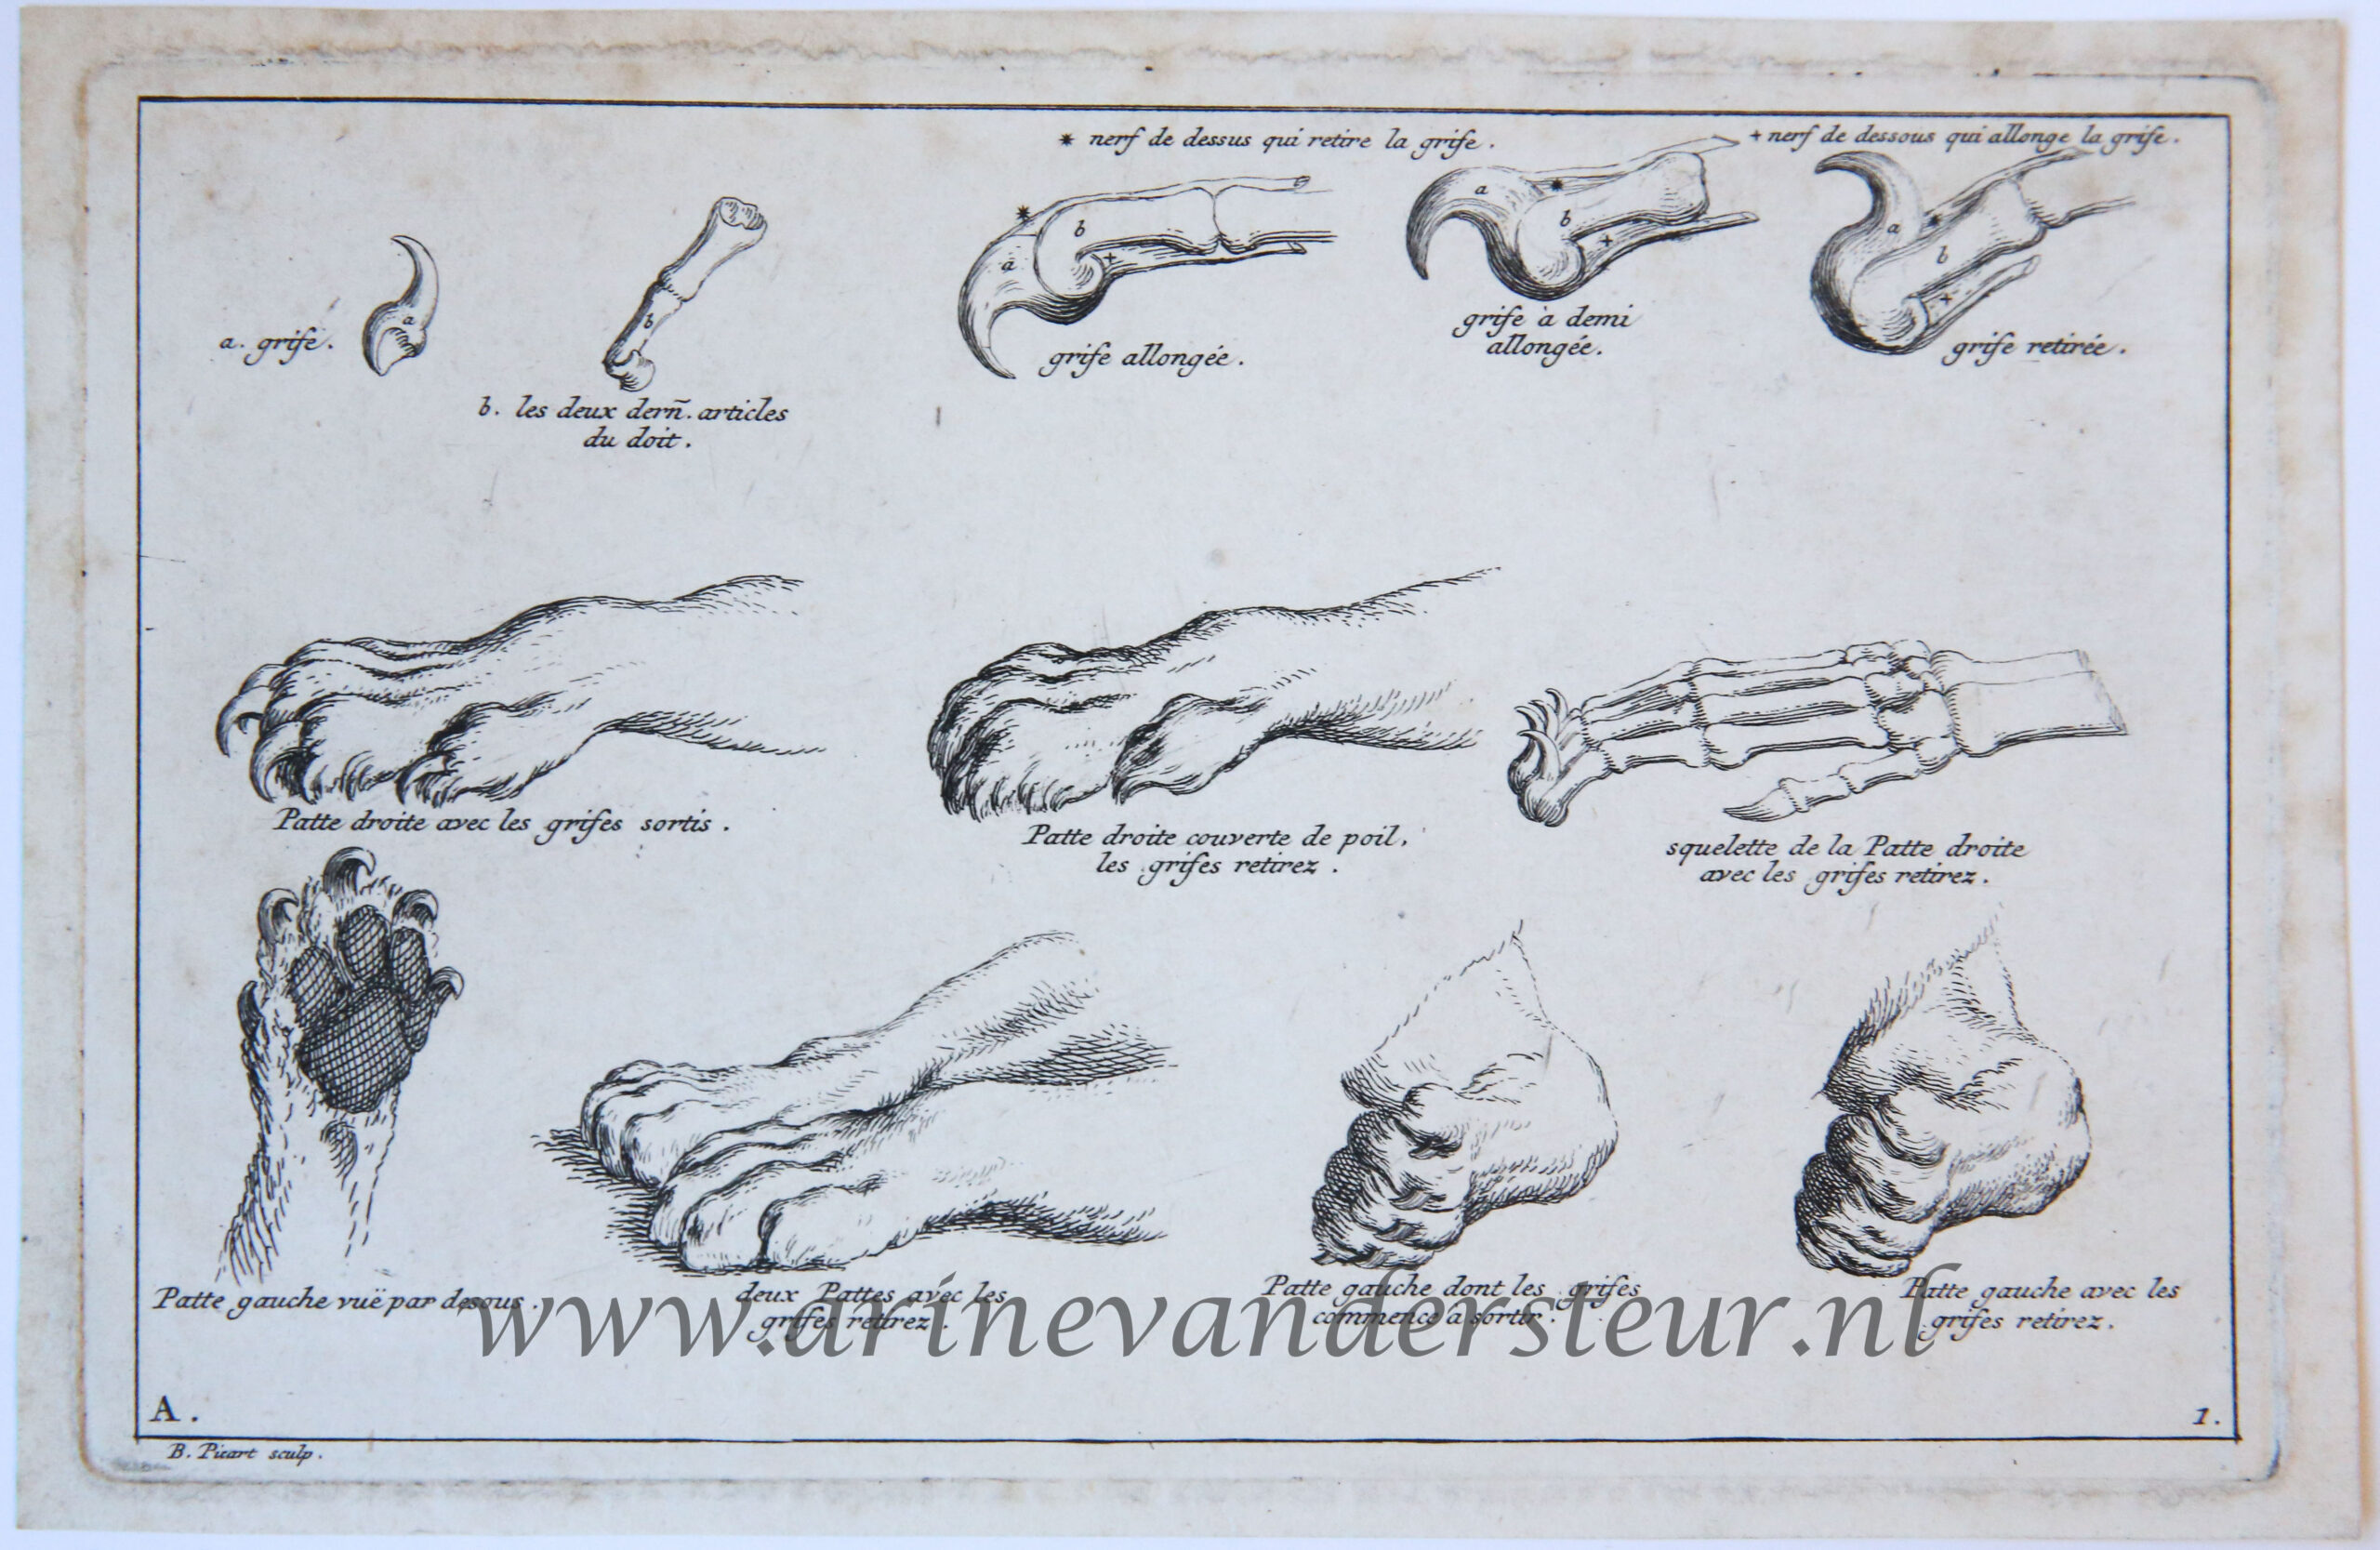 [Antique print, etching] Anatomy of a lion’s paw [set title: Receuil de Lions, series A]/De anatomie van de poot van de leeuw, published 1729.